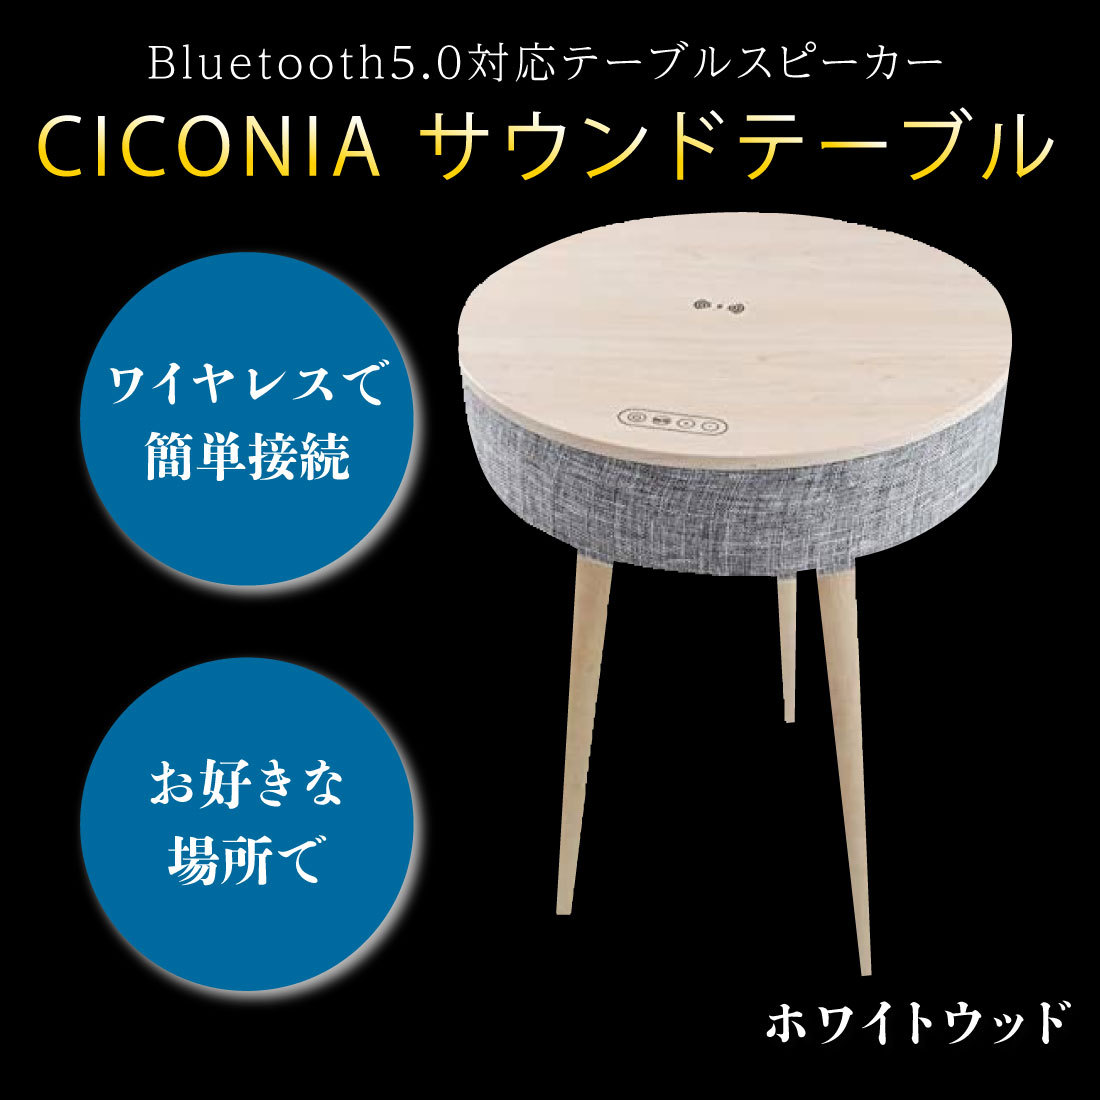 CICONIA サウンドテーブル STC-109BBT 2カラー Bluetooth5.0対応